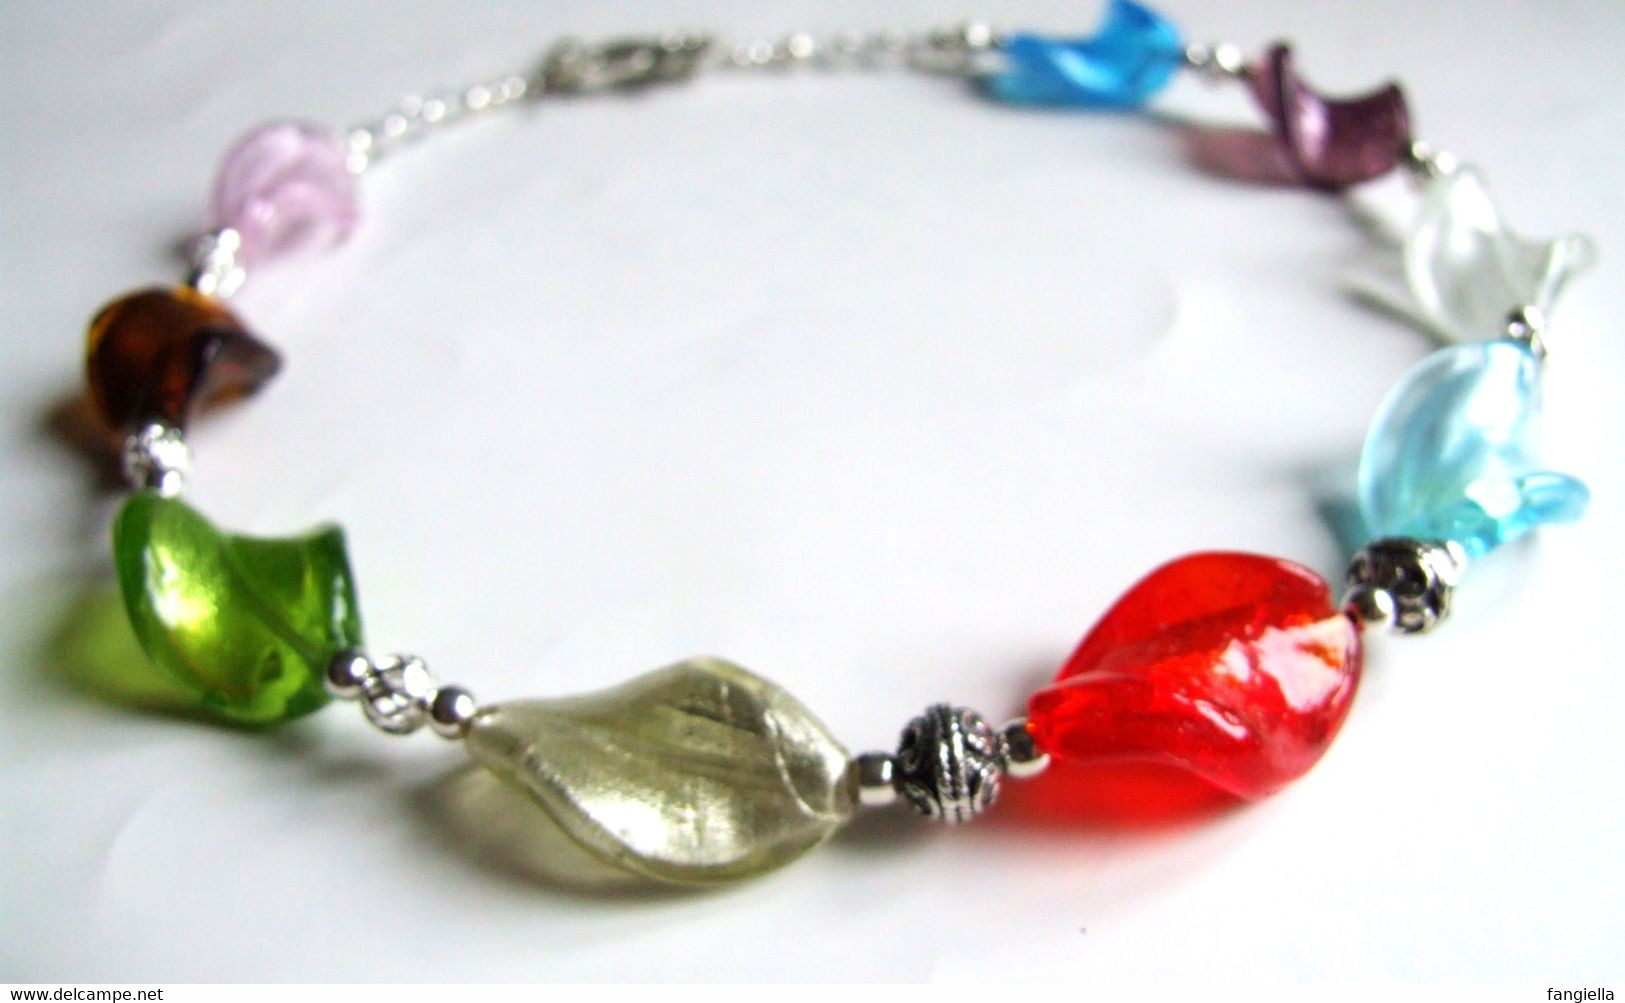 Collier perles verre, perles sur feuilles d'argent, travail artisanal, cadeau original femme, collier multicolore chic,